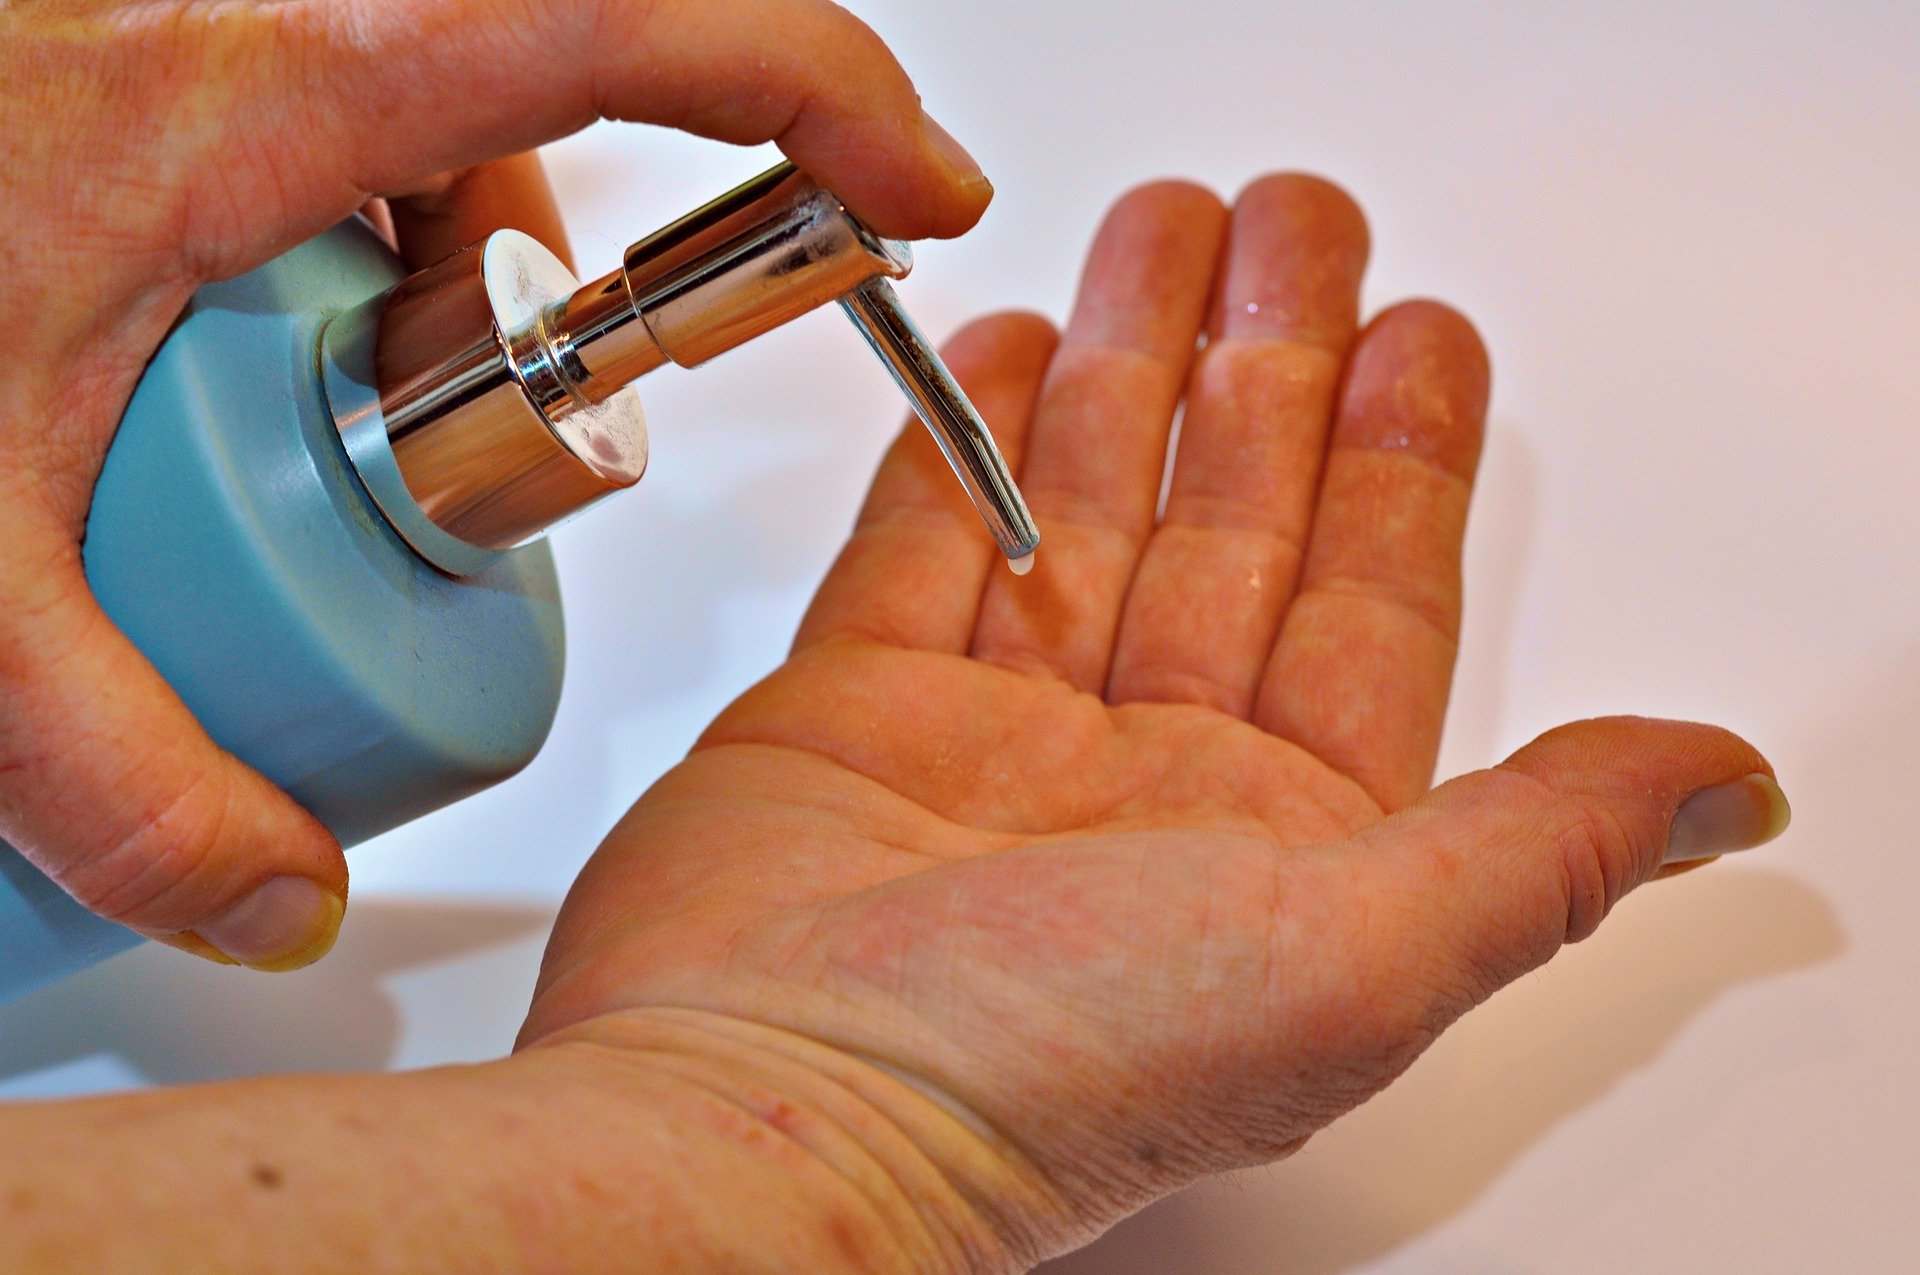 Kako pravilno prati ruke sapunom i vodom, a kako obaviti higijenu ruku sredstvom na bazi alkohola?